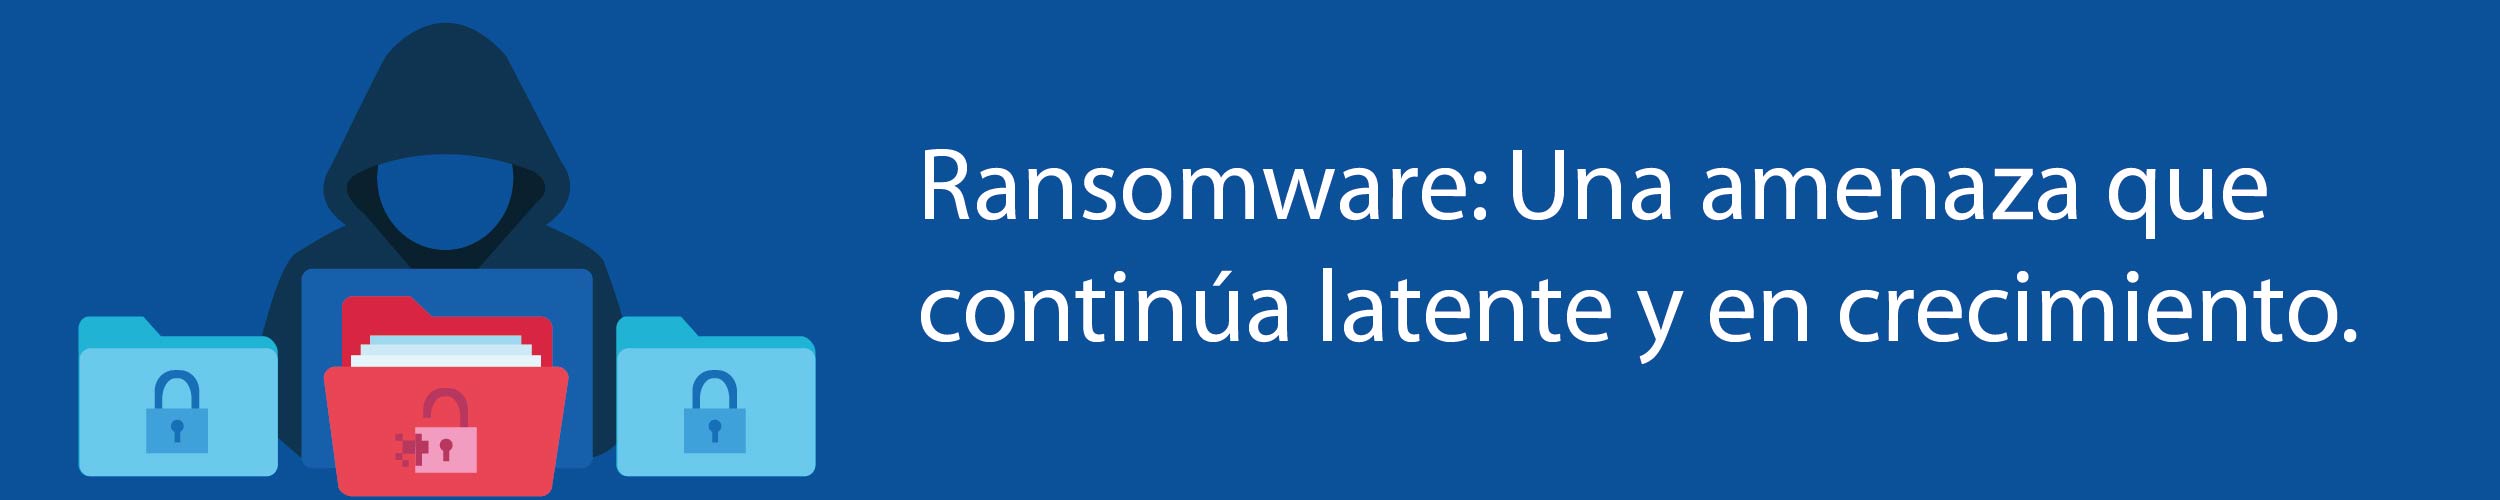 Ransomware: Una amenaza que continúa latente y en crecimiento.